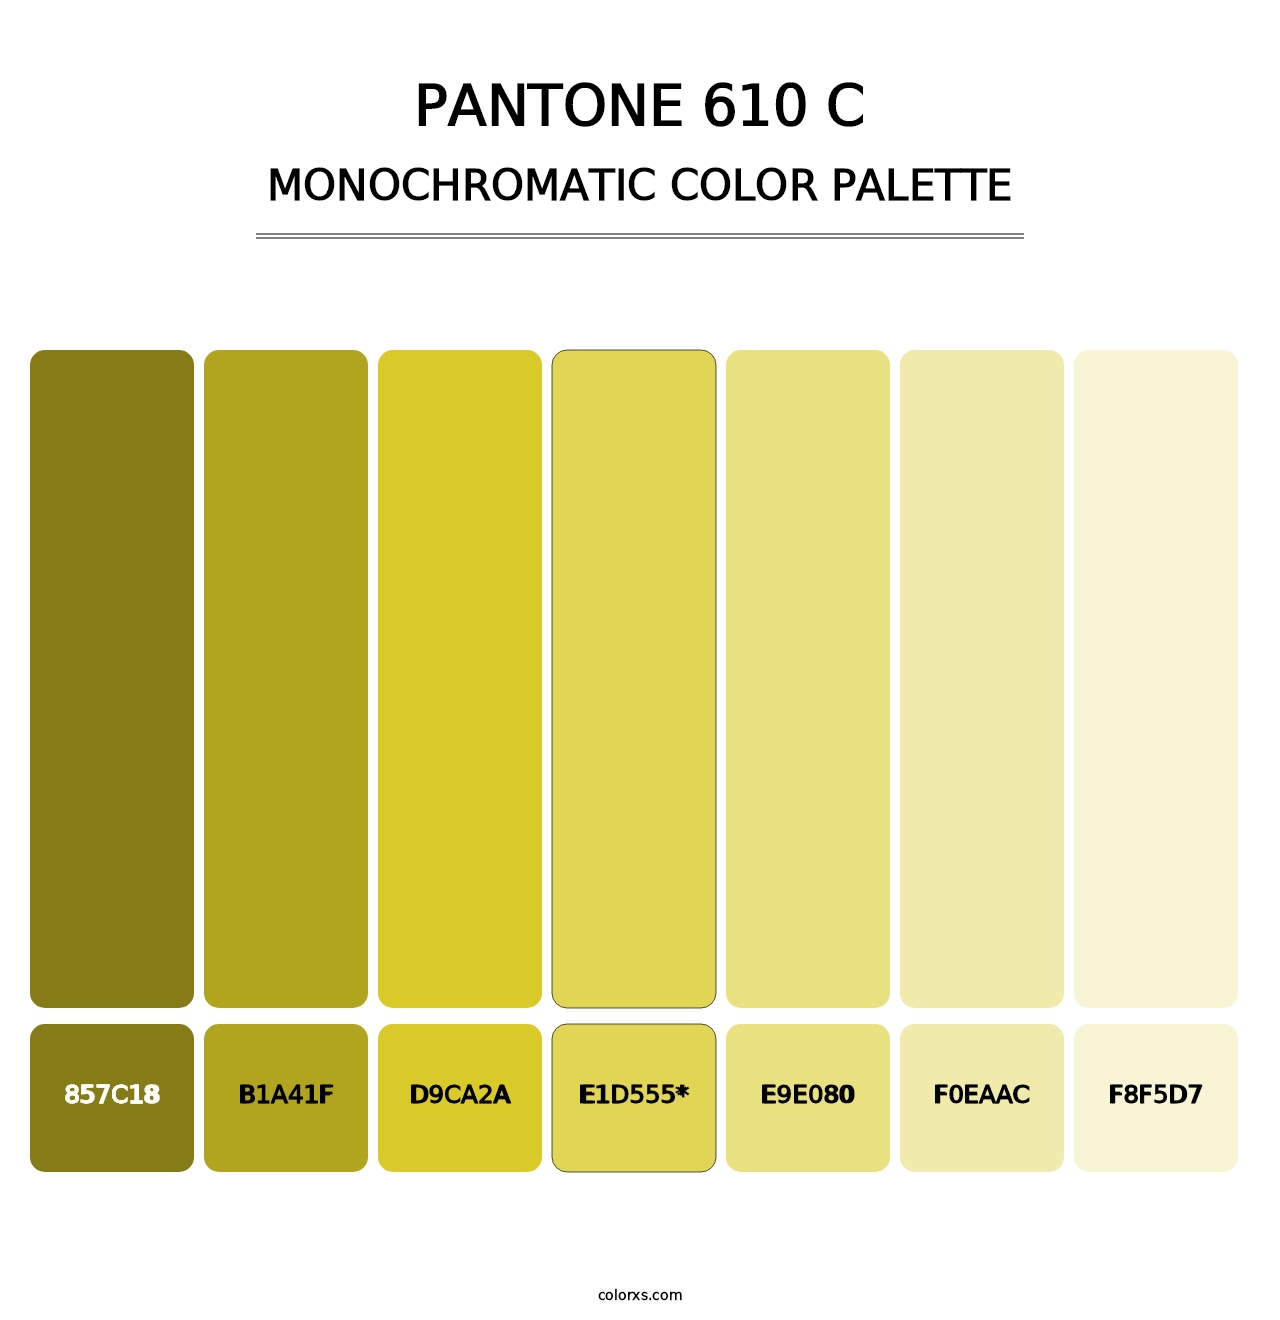 PANTONE 610 C - Monochromatic Color Palette